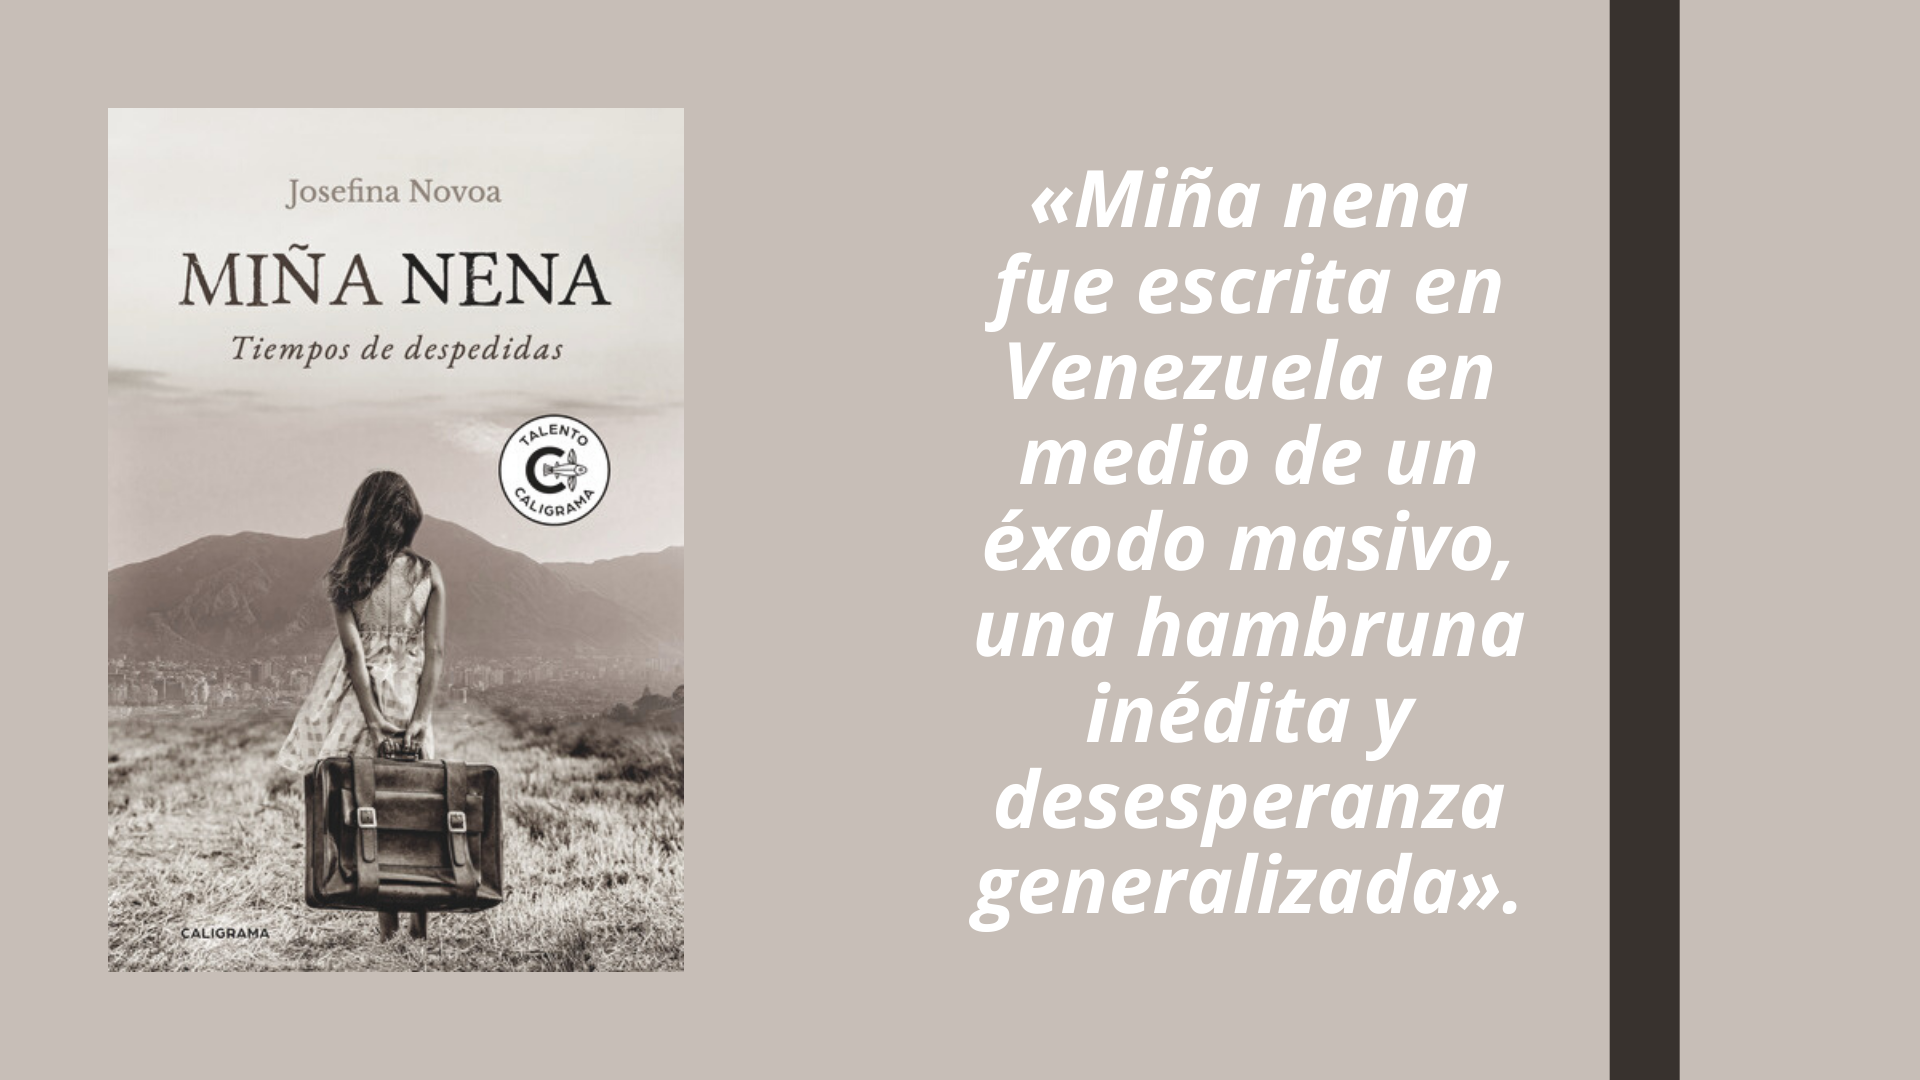 Josefina Novoa: ’Miña nena’ fue escrita en Venezuela en medio de un éxodo masivo, una hambruna inédita y desesperanza generalizada